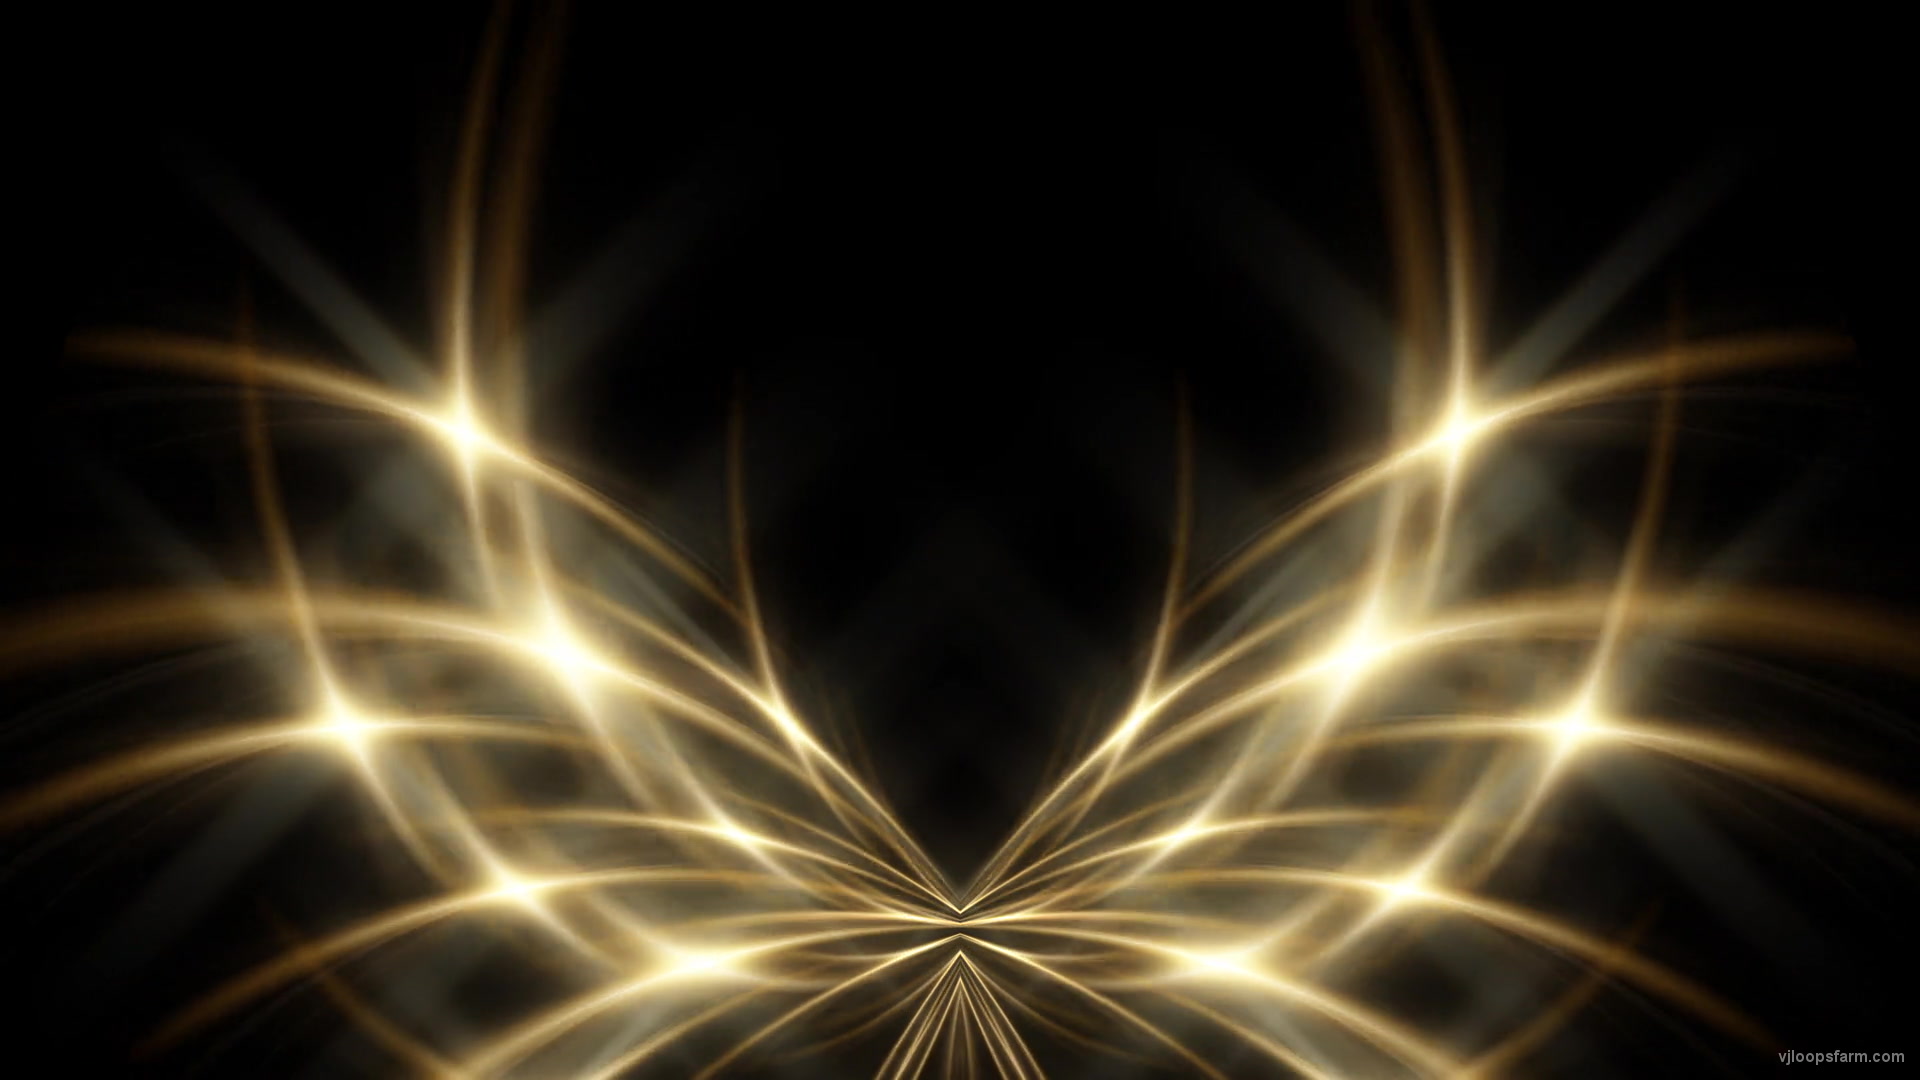 LIght Butterfly Rays Gate shining pattern Ultra HD VJ Loop